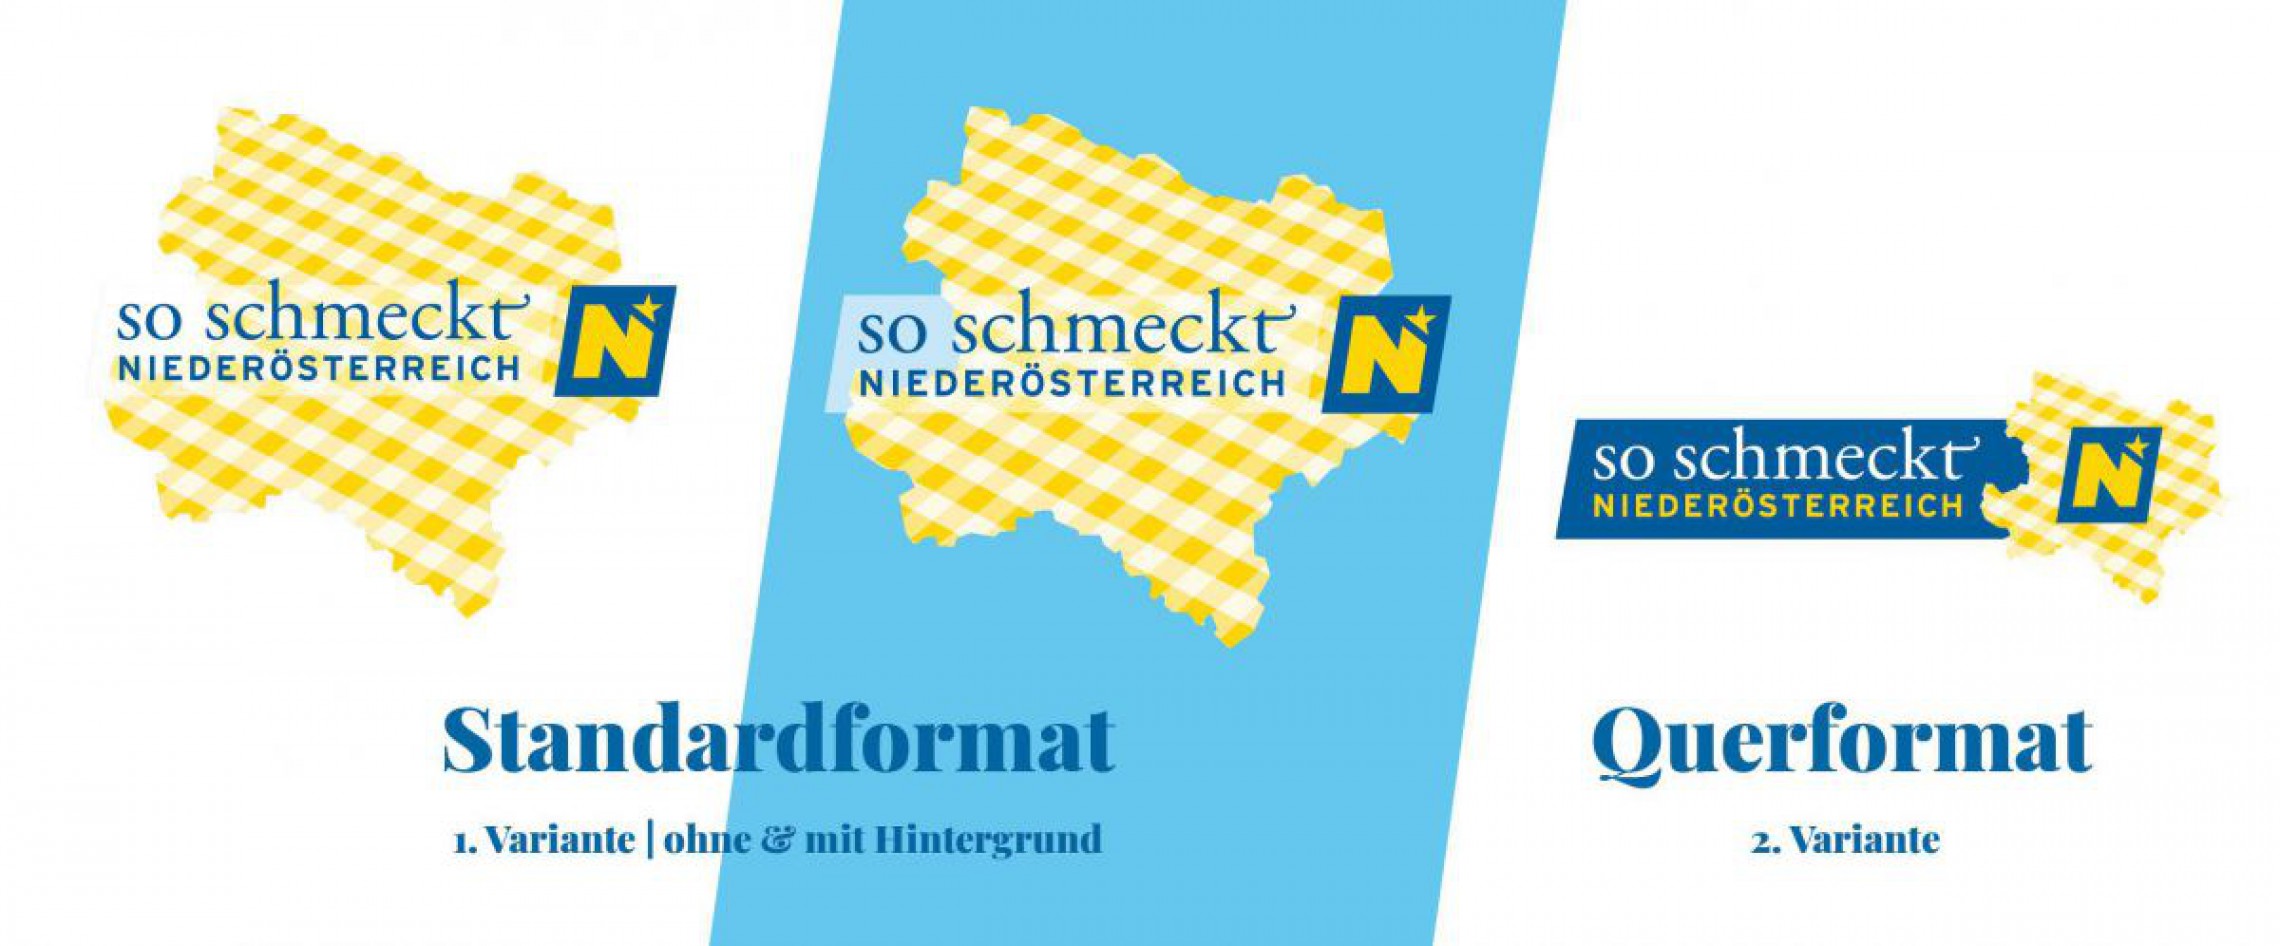 Neues So schmeckt Niederösterreich Logo in verschiedenen Varianten